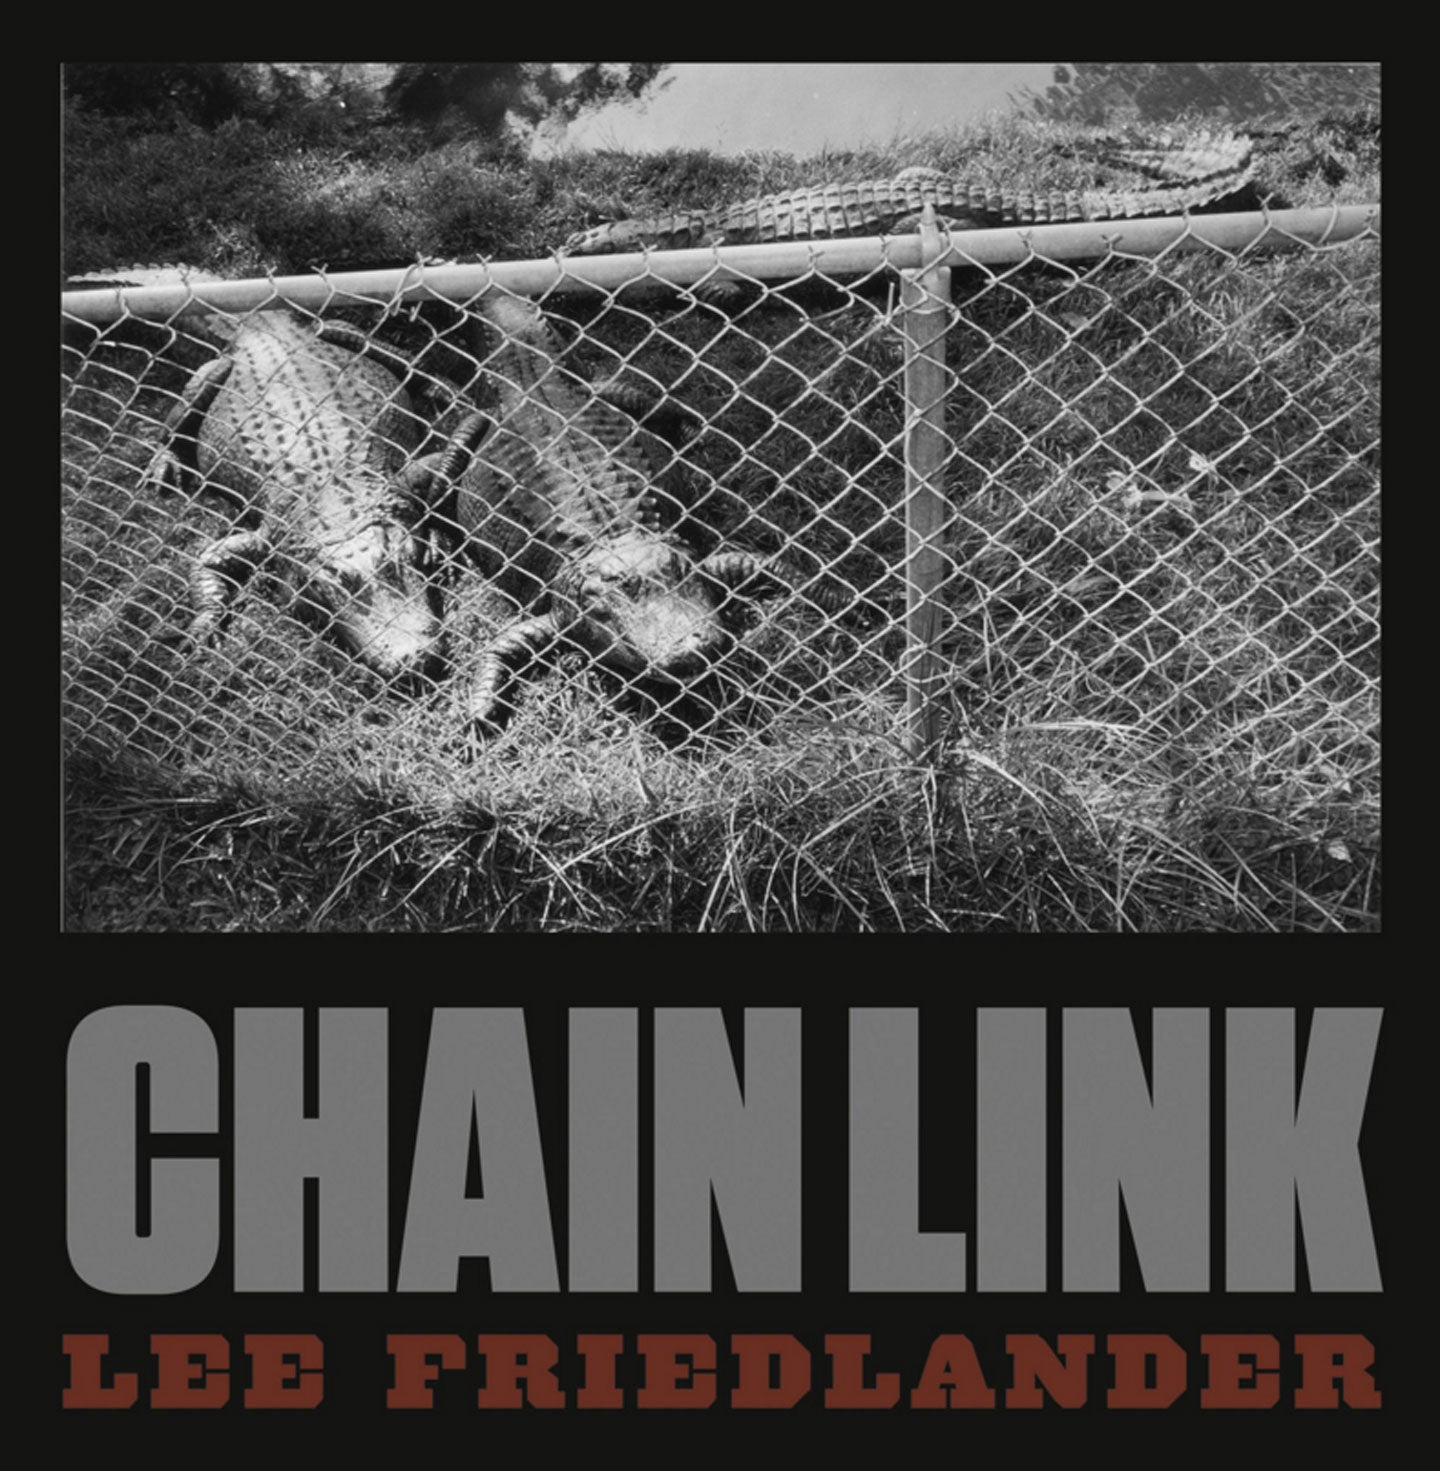 Lee Friedlander: Chain Link [SIGNED]